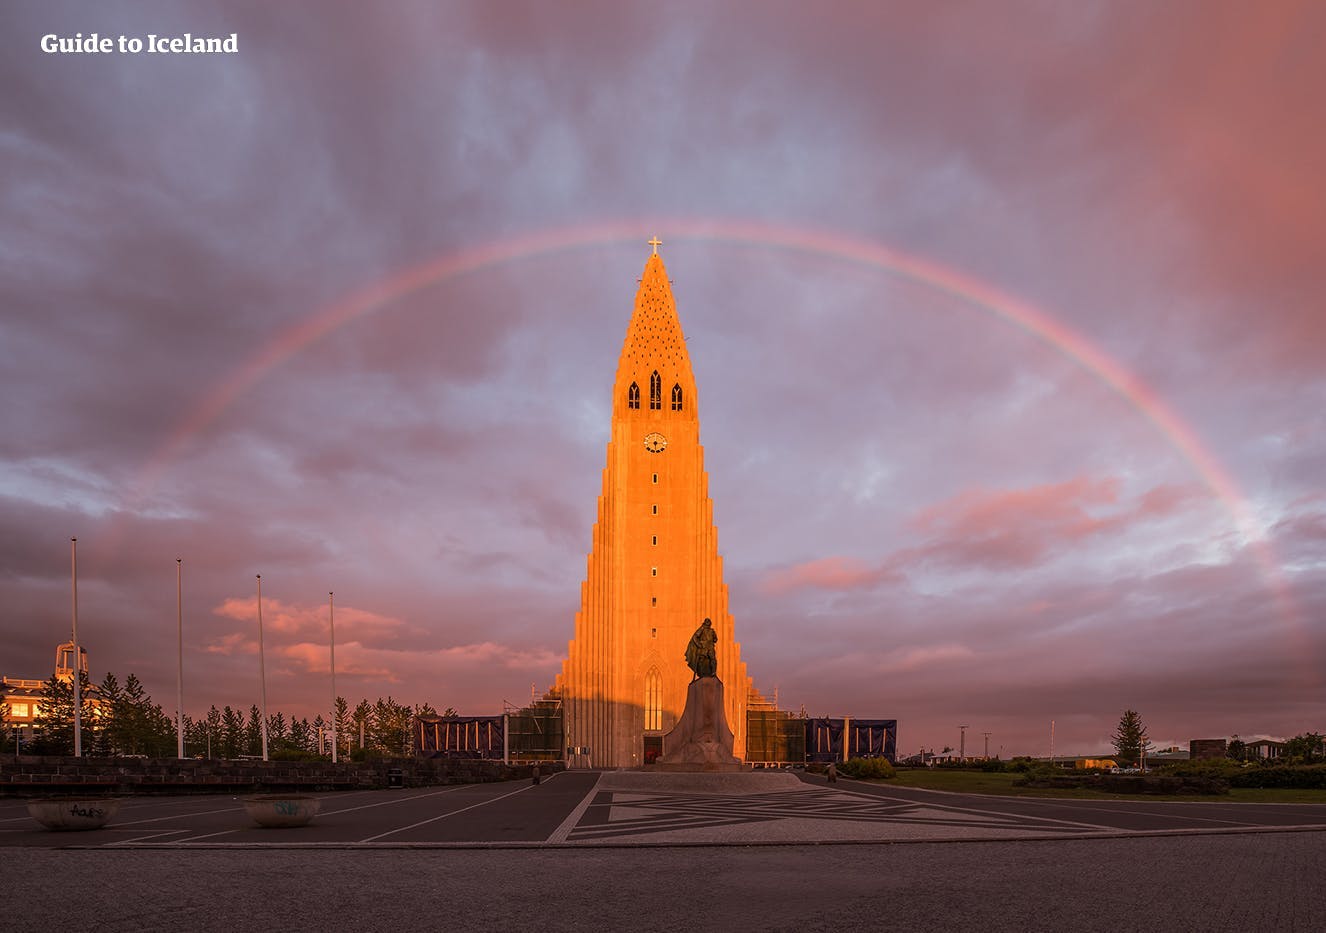 Kościół luterański Hallgrímskirkja jest jedną z najbardziej znanych atrakcji Islandii i znajduje się w Reykjaviku.